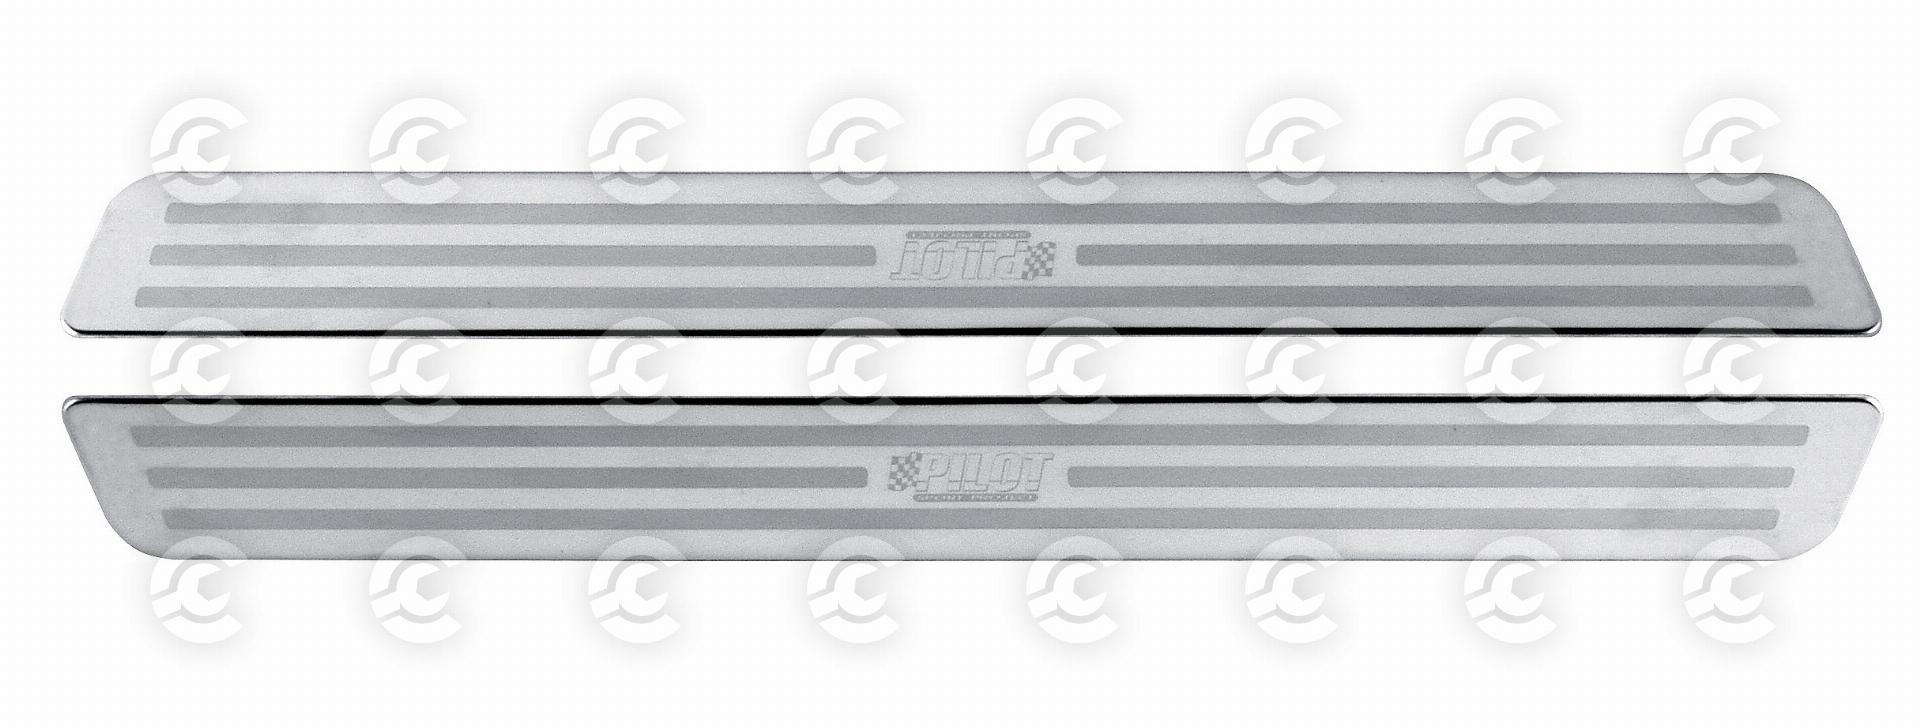 Profili battitacco in acciaio inox - PB-4 - 330x32 mm